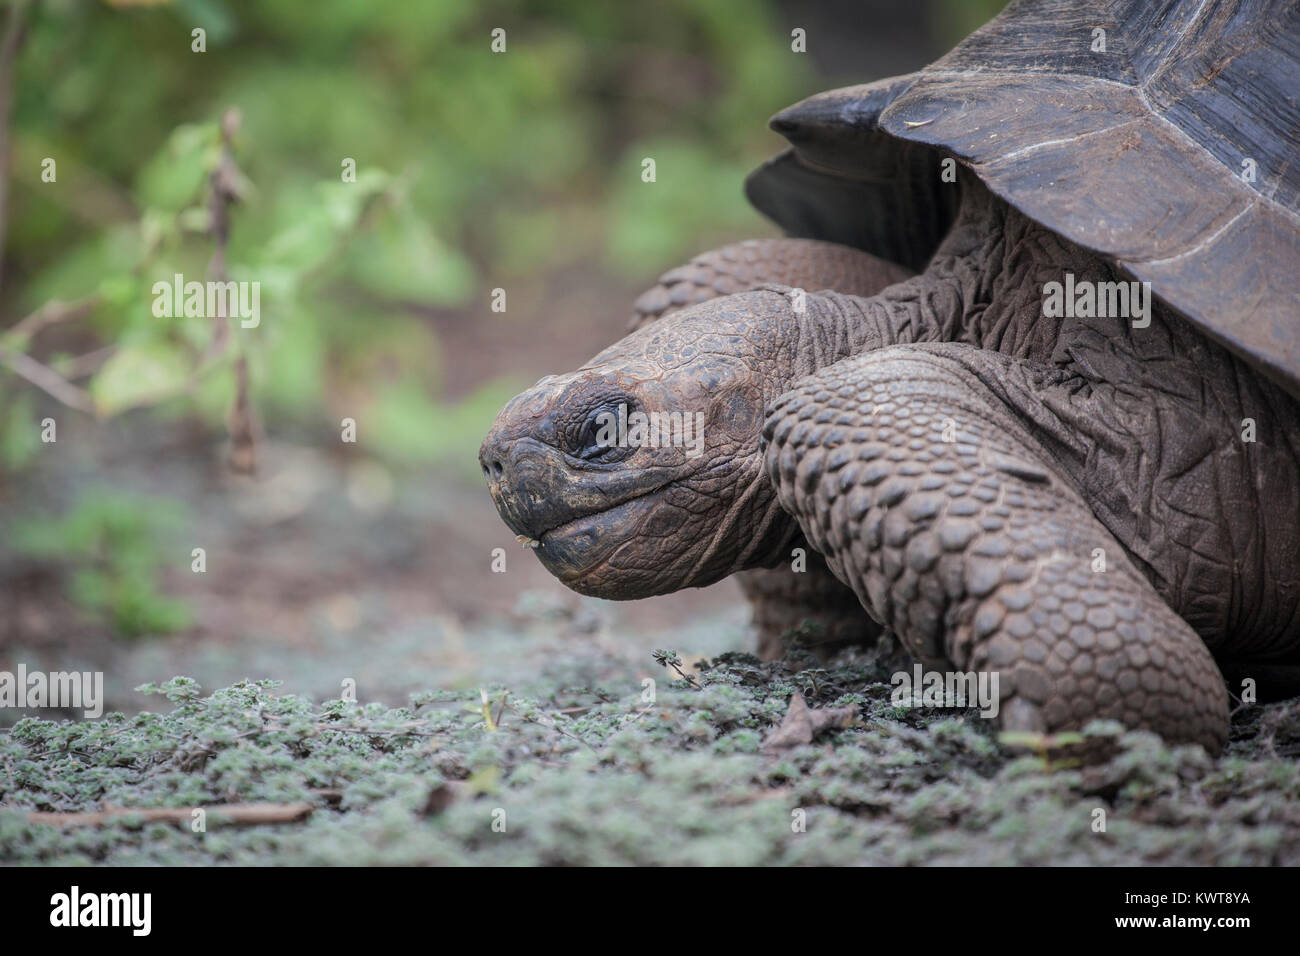 Cerca de una tortuga gigante de Galápagos (Chelonoidis nigra guntheri) en el medio silvestre. Isla Isabela, Galápagos. Foto de stock